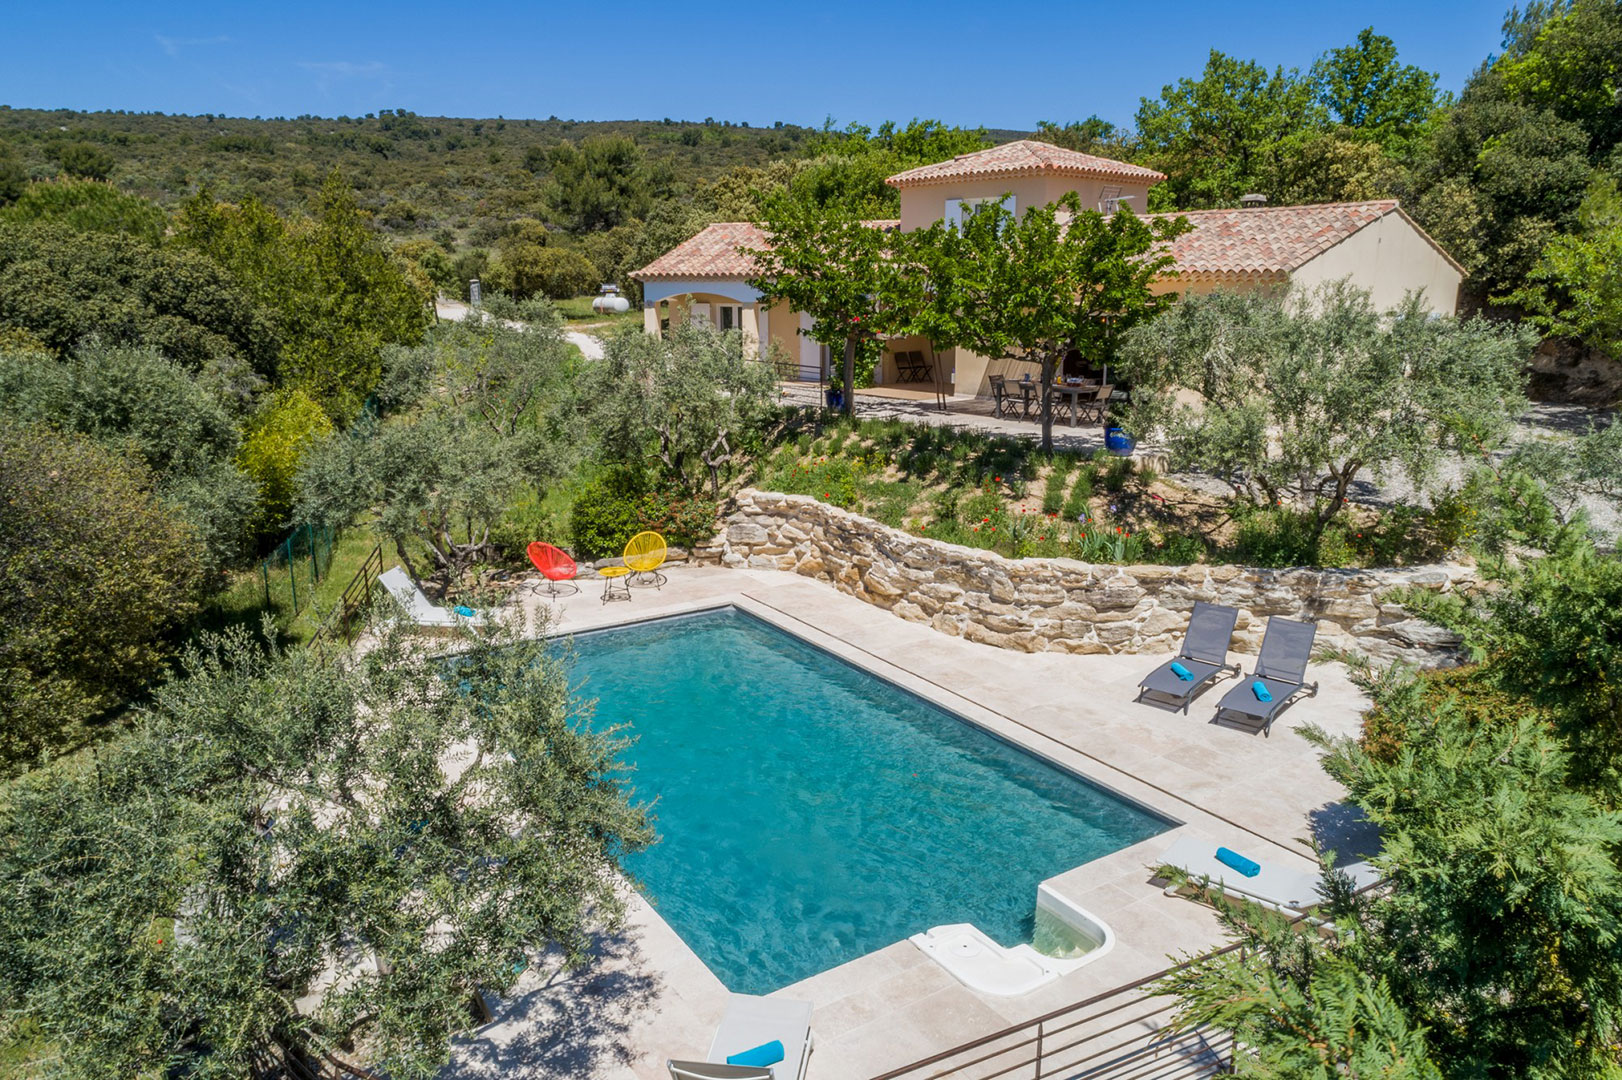 Location saisonnière en Provence, propriété rénovée avec piscine